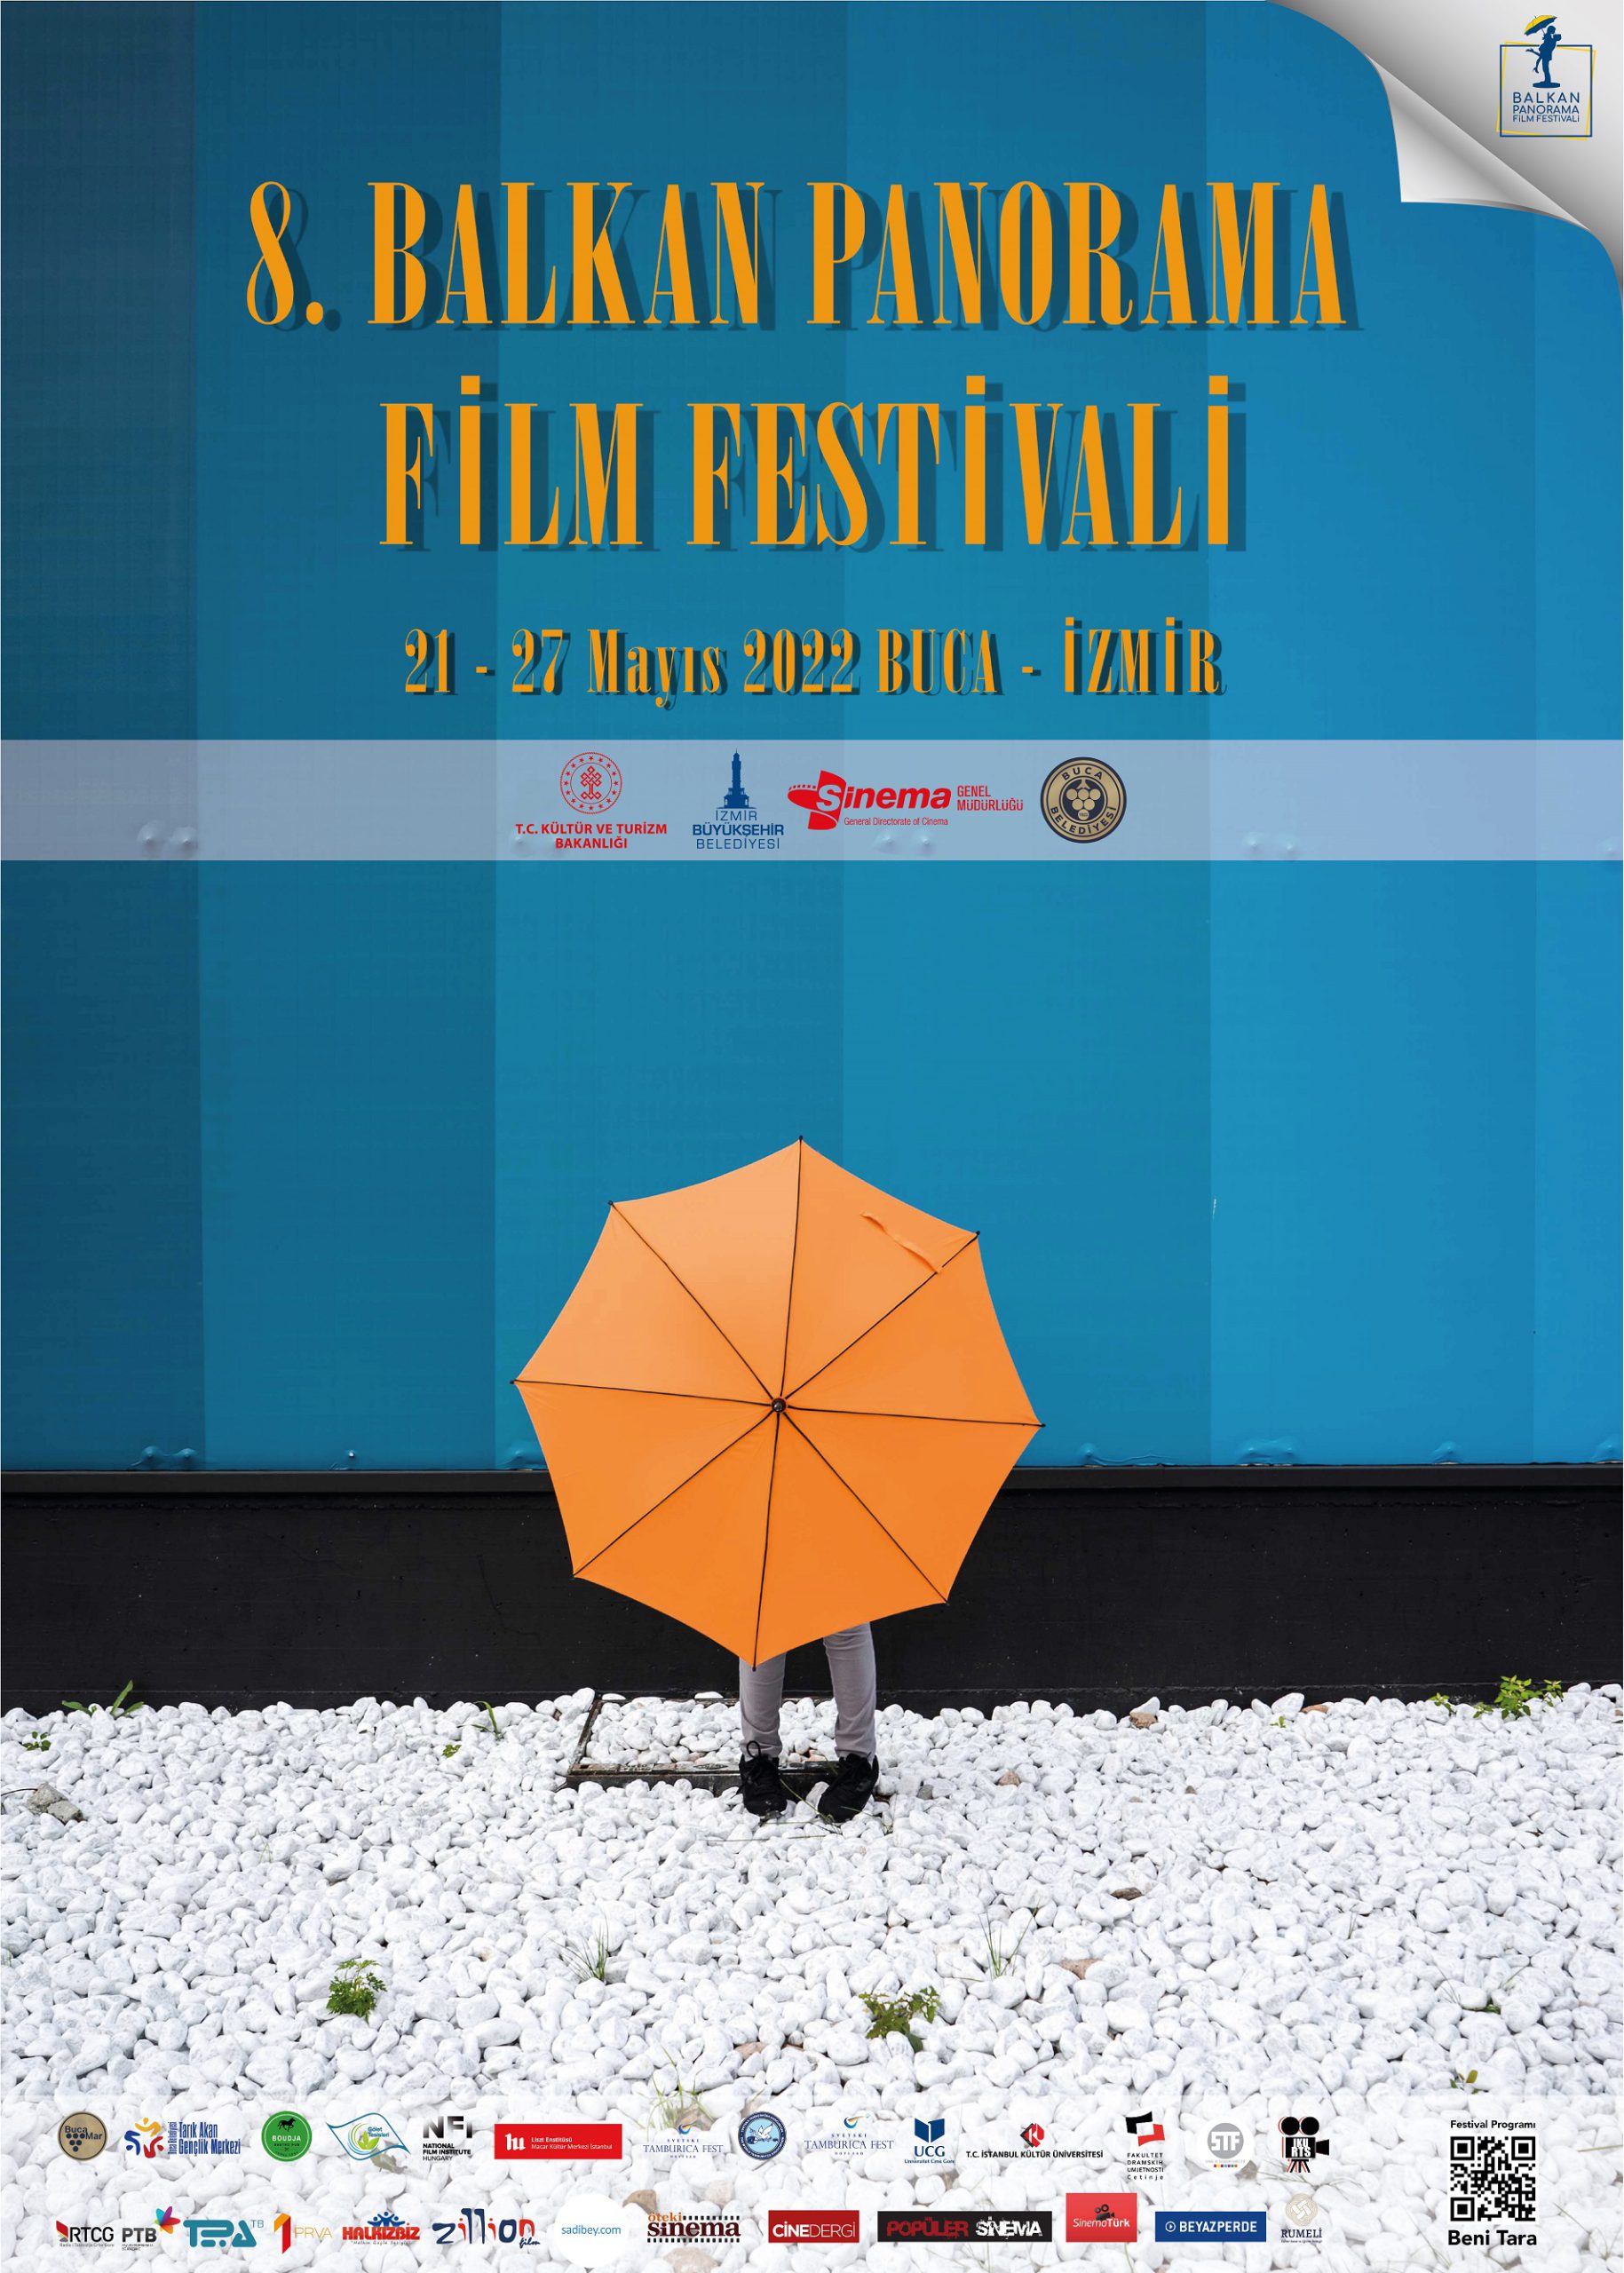 Balkan Panorama Film Festivali